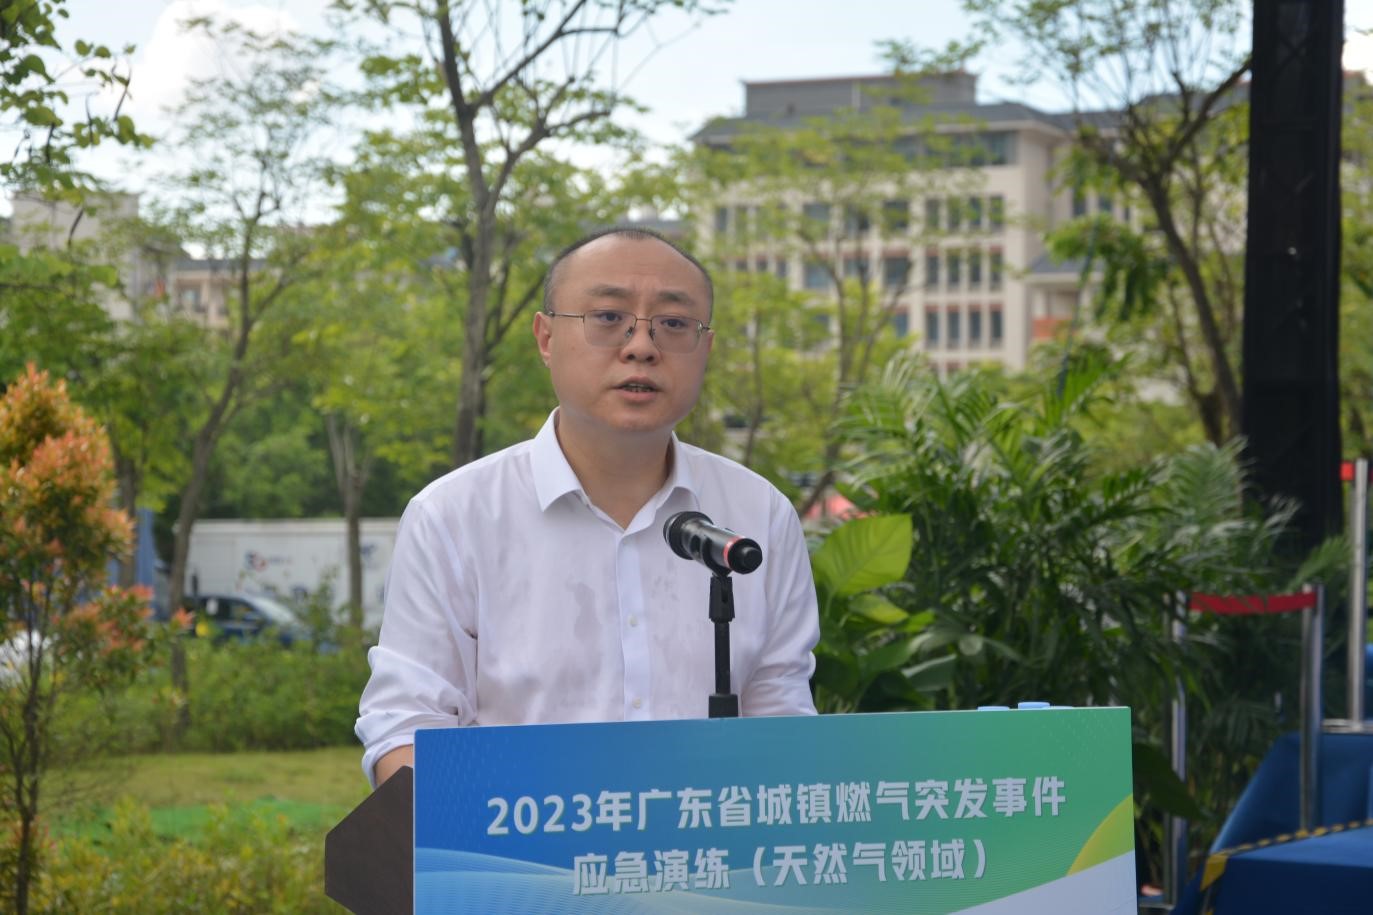 2023年广东省城镇燃气突发事件应急演练（天然气领域）在惠州成功举办图二.jpg